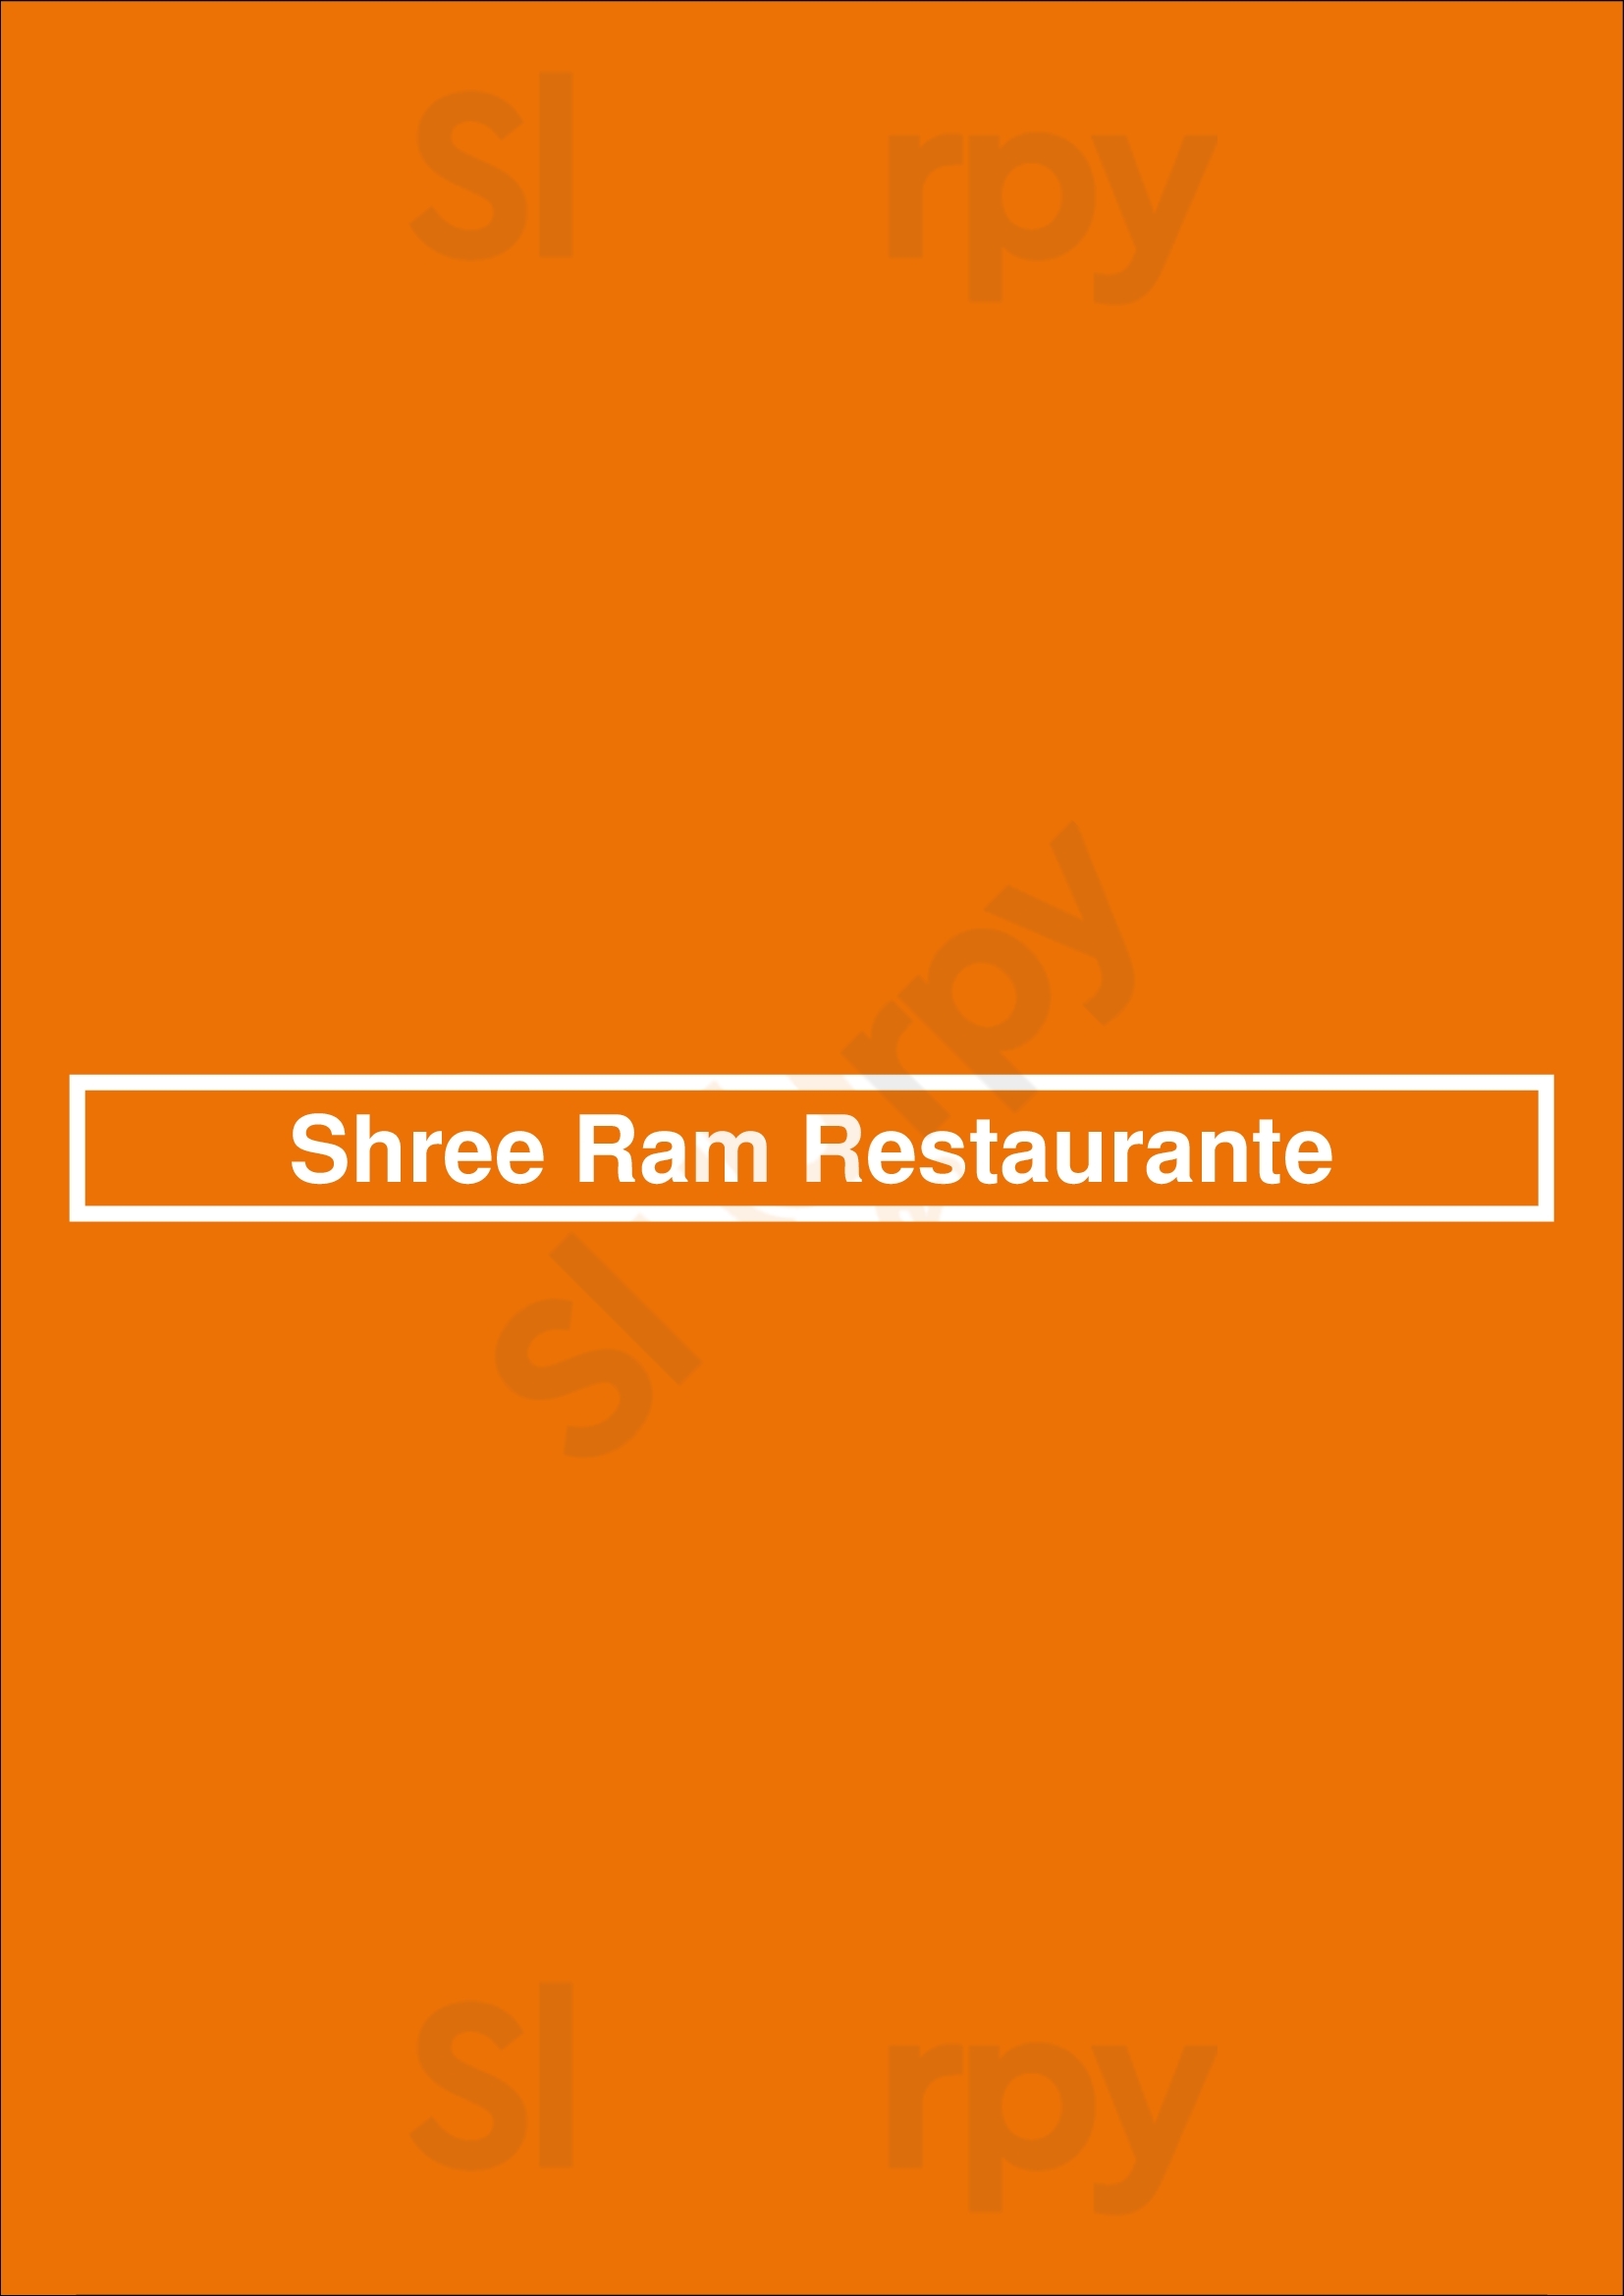 Shree Ram Restaurante Lisboa Menu - 1